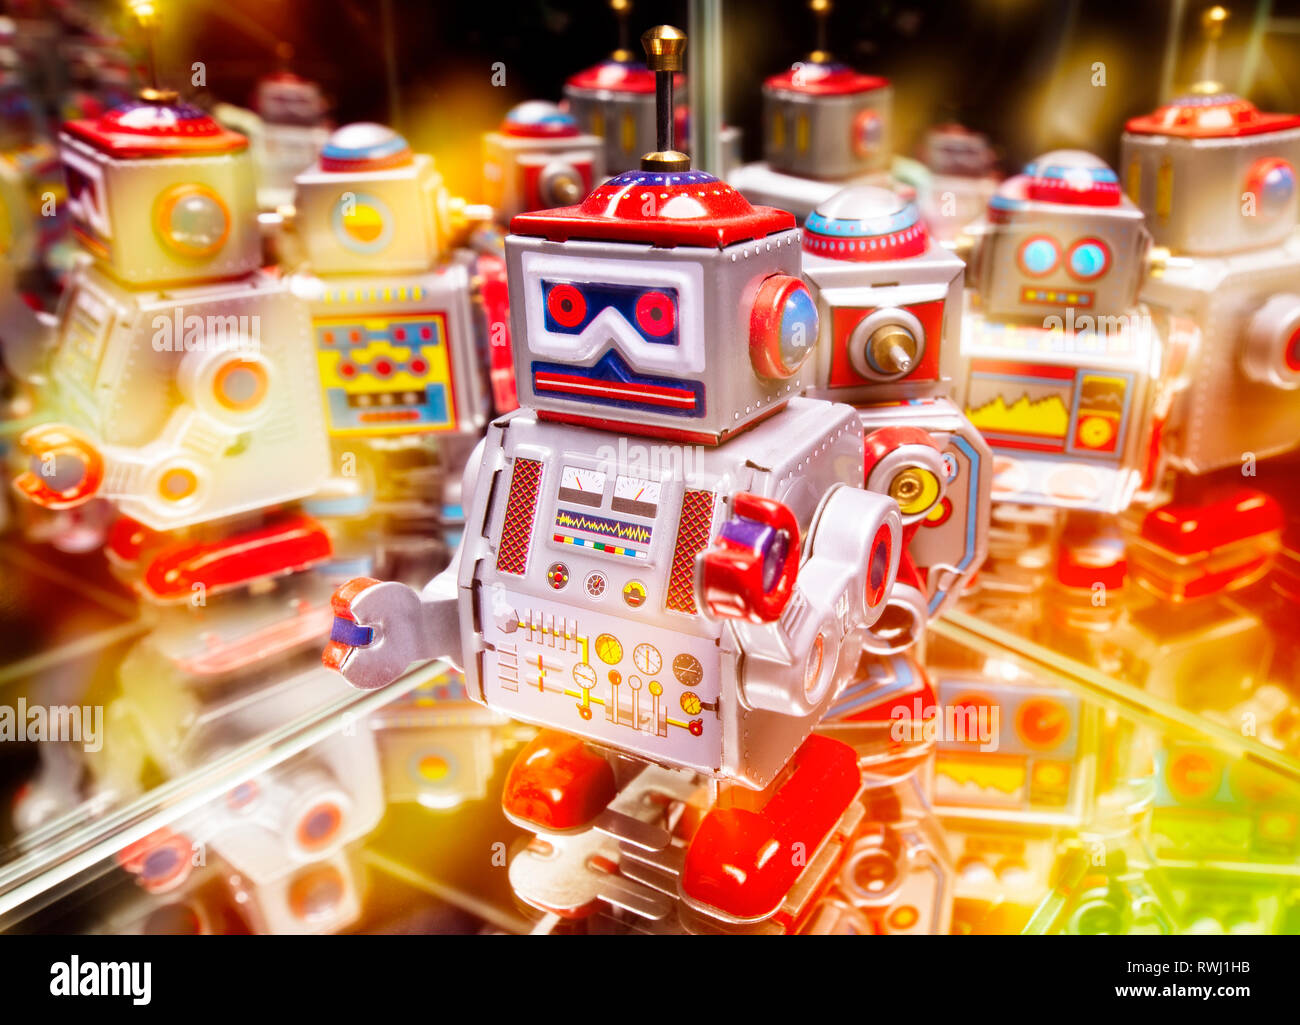 Des robots avec les réflexions et les différents voyants de couleur Banque D'Images